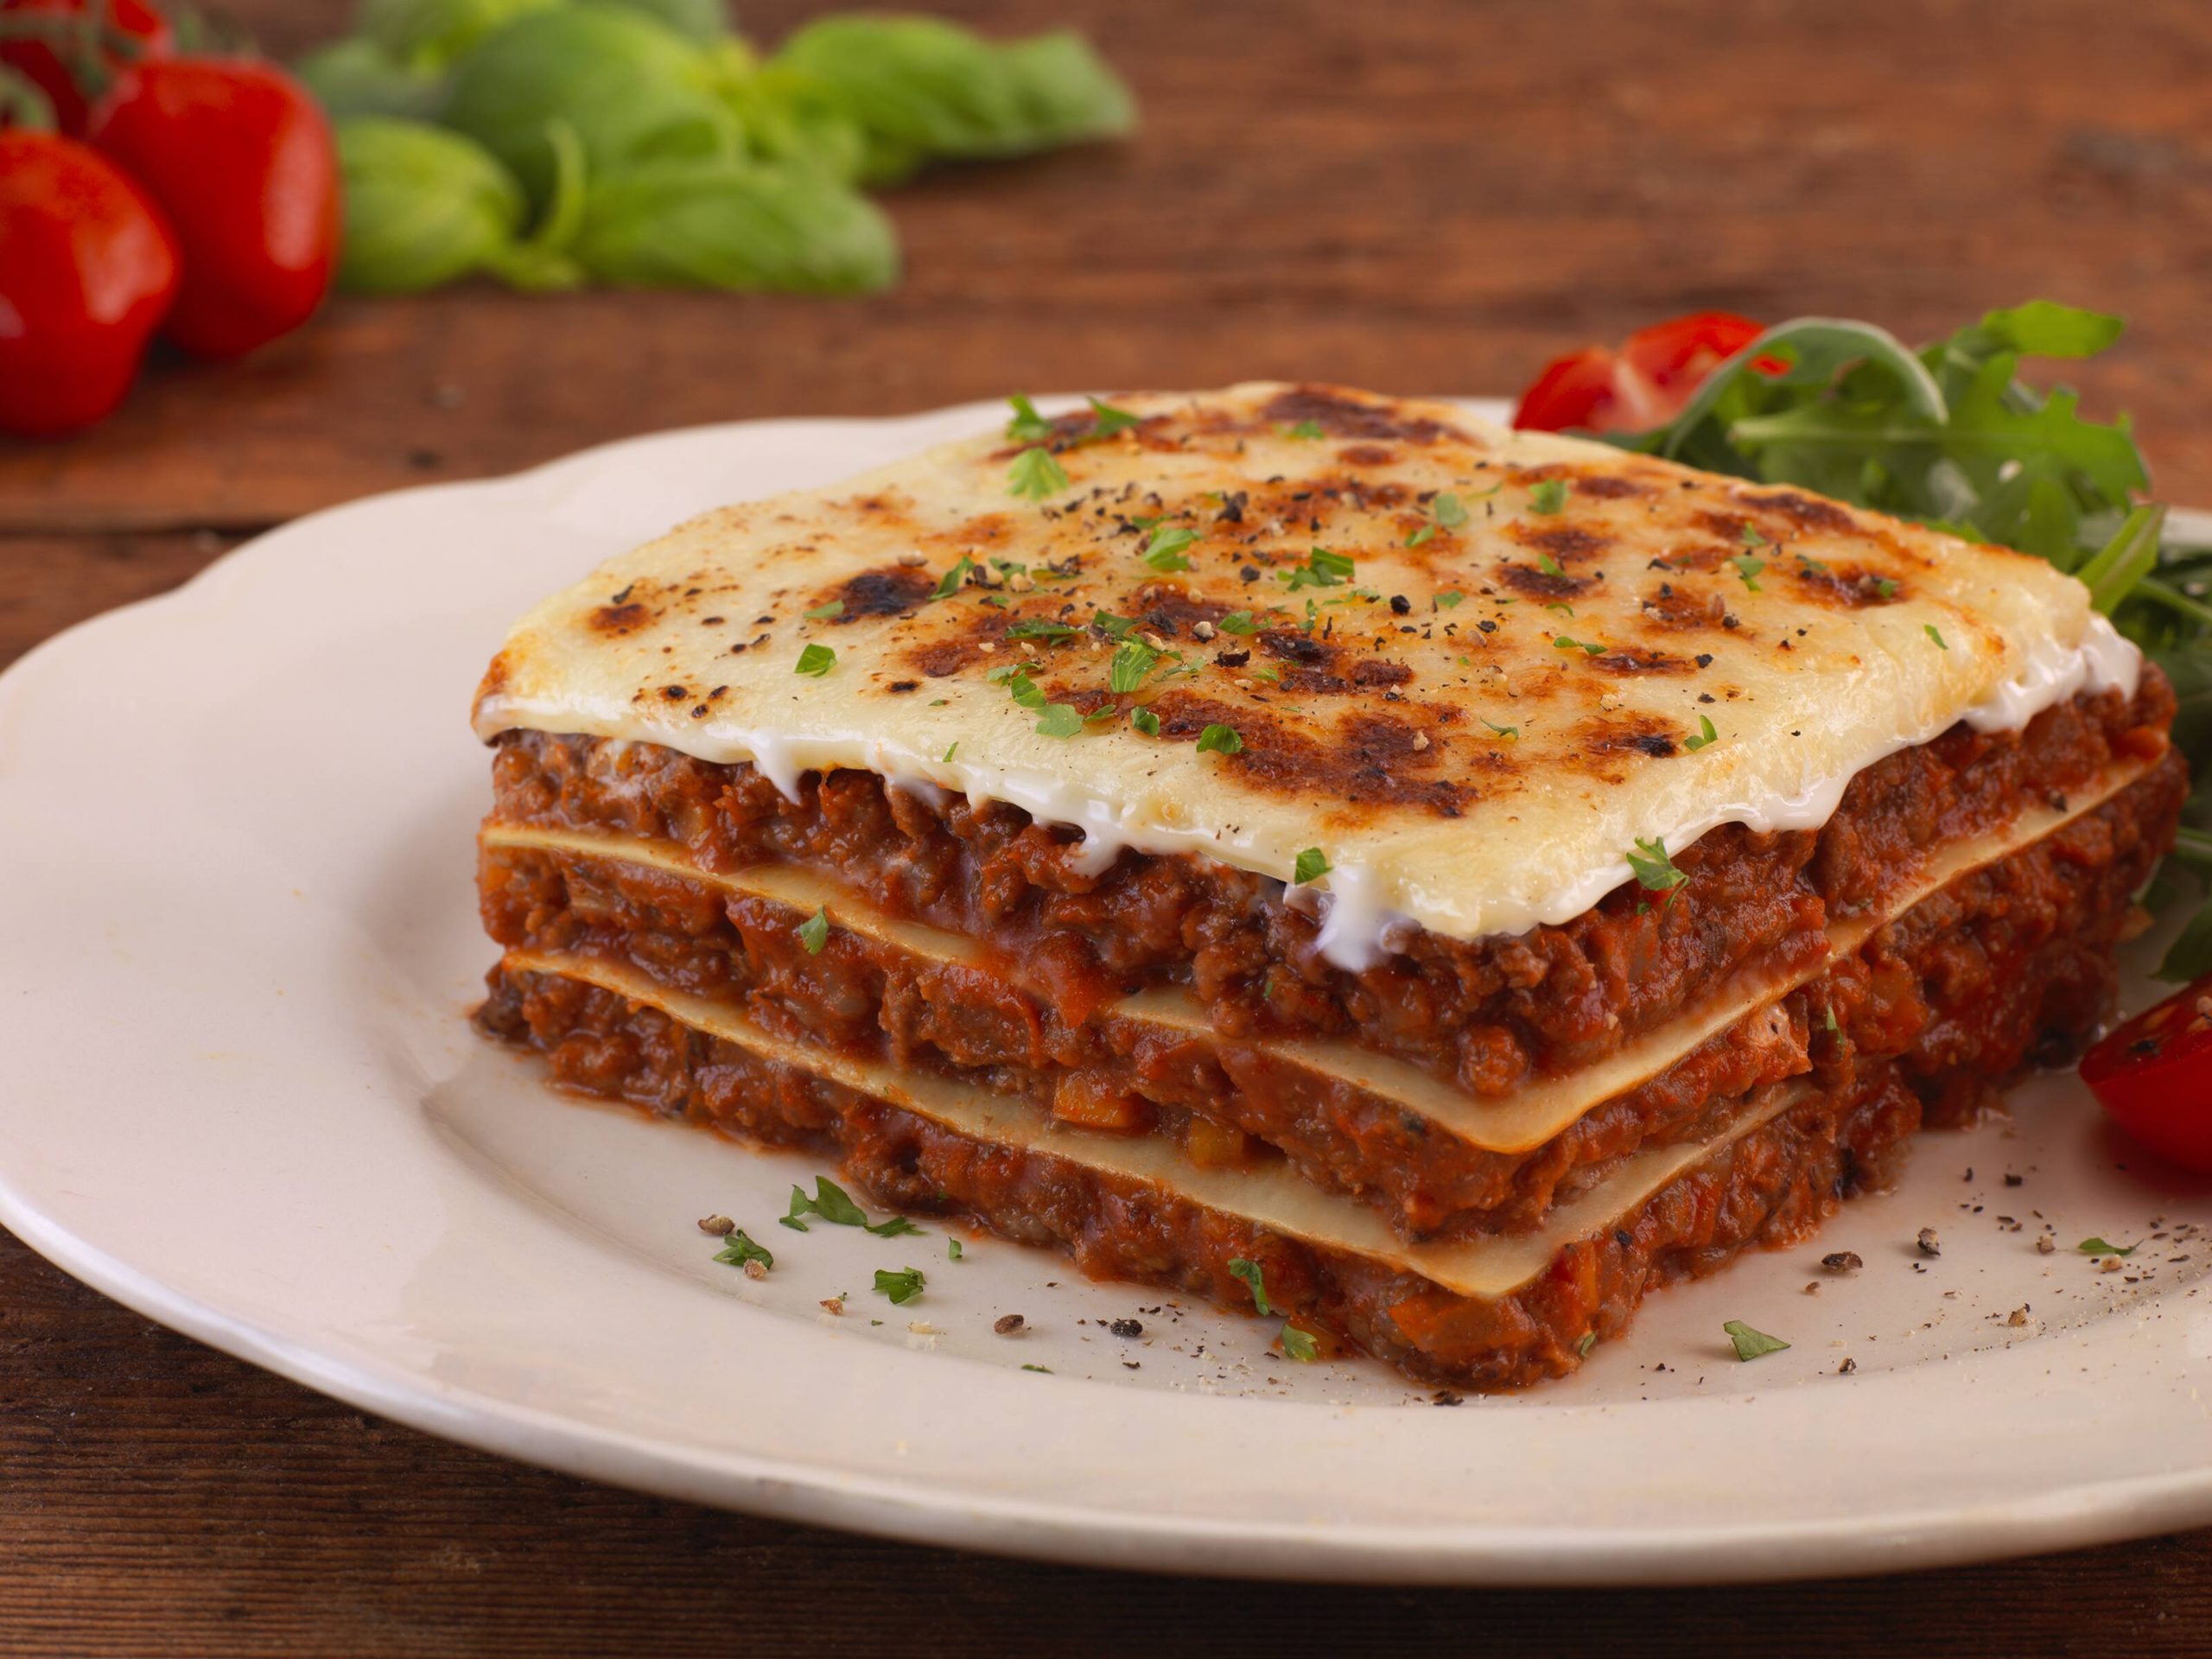 Best Meat lasagne in emirate of abu dhabi | أفضل لازانيا في إمارة أبو ظبي